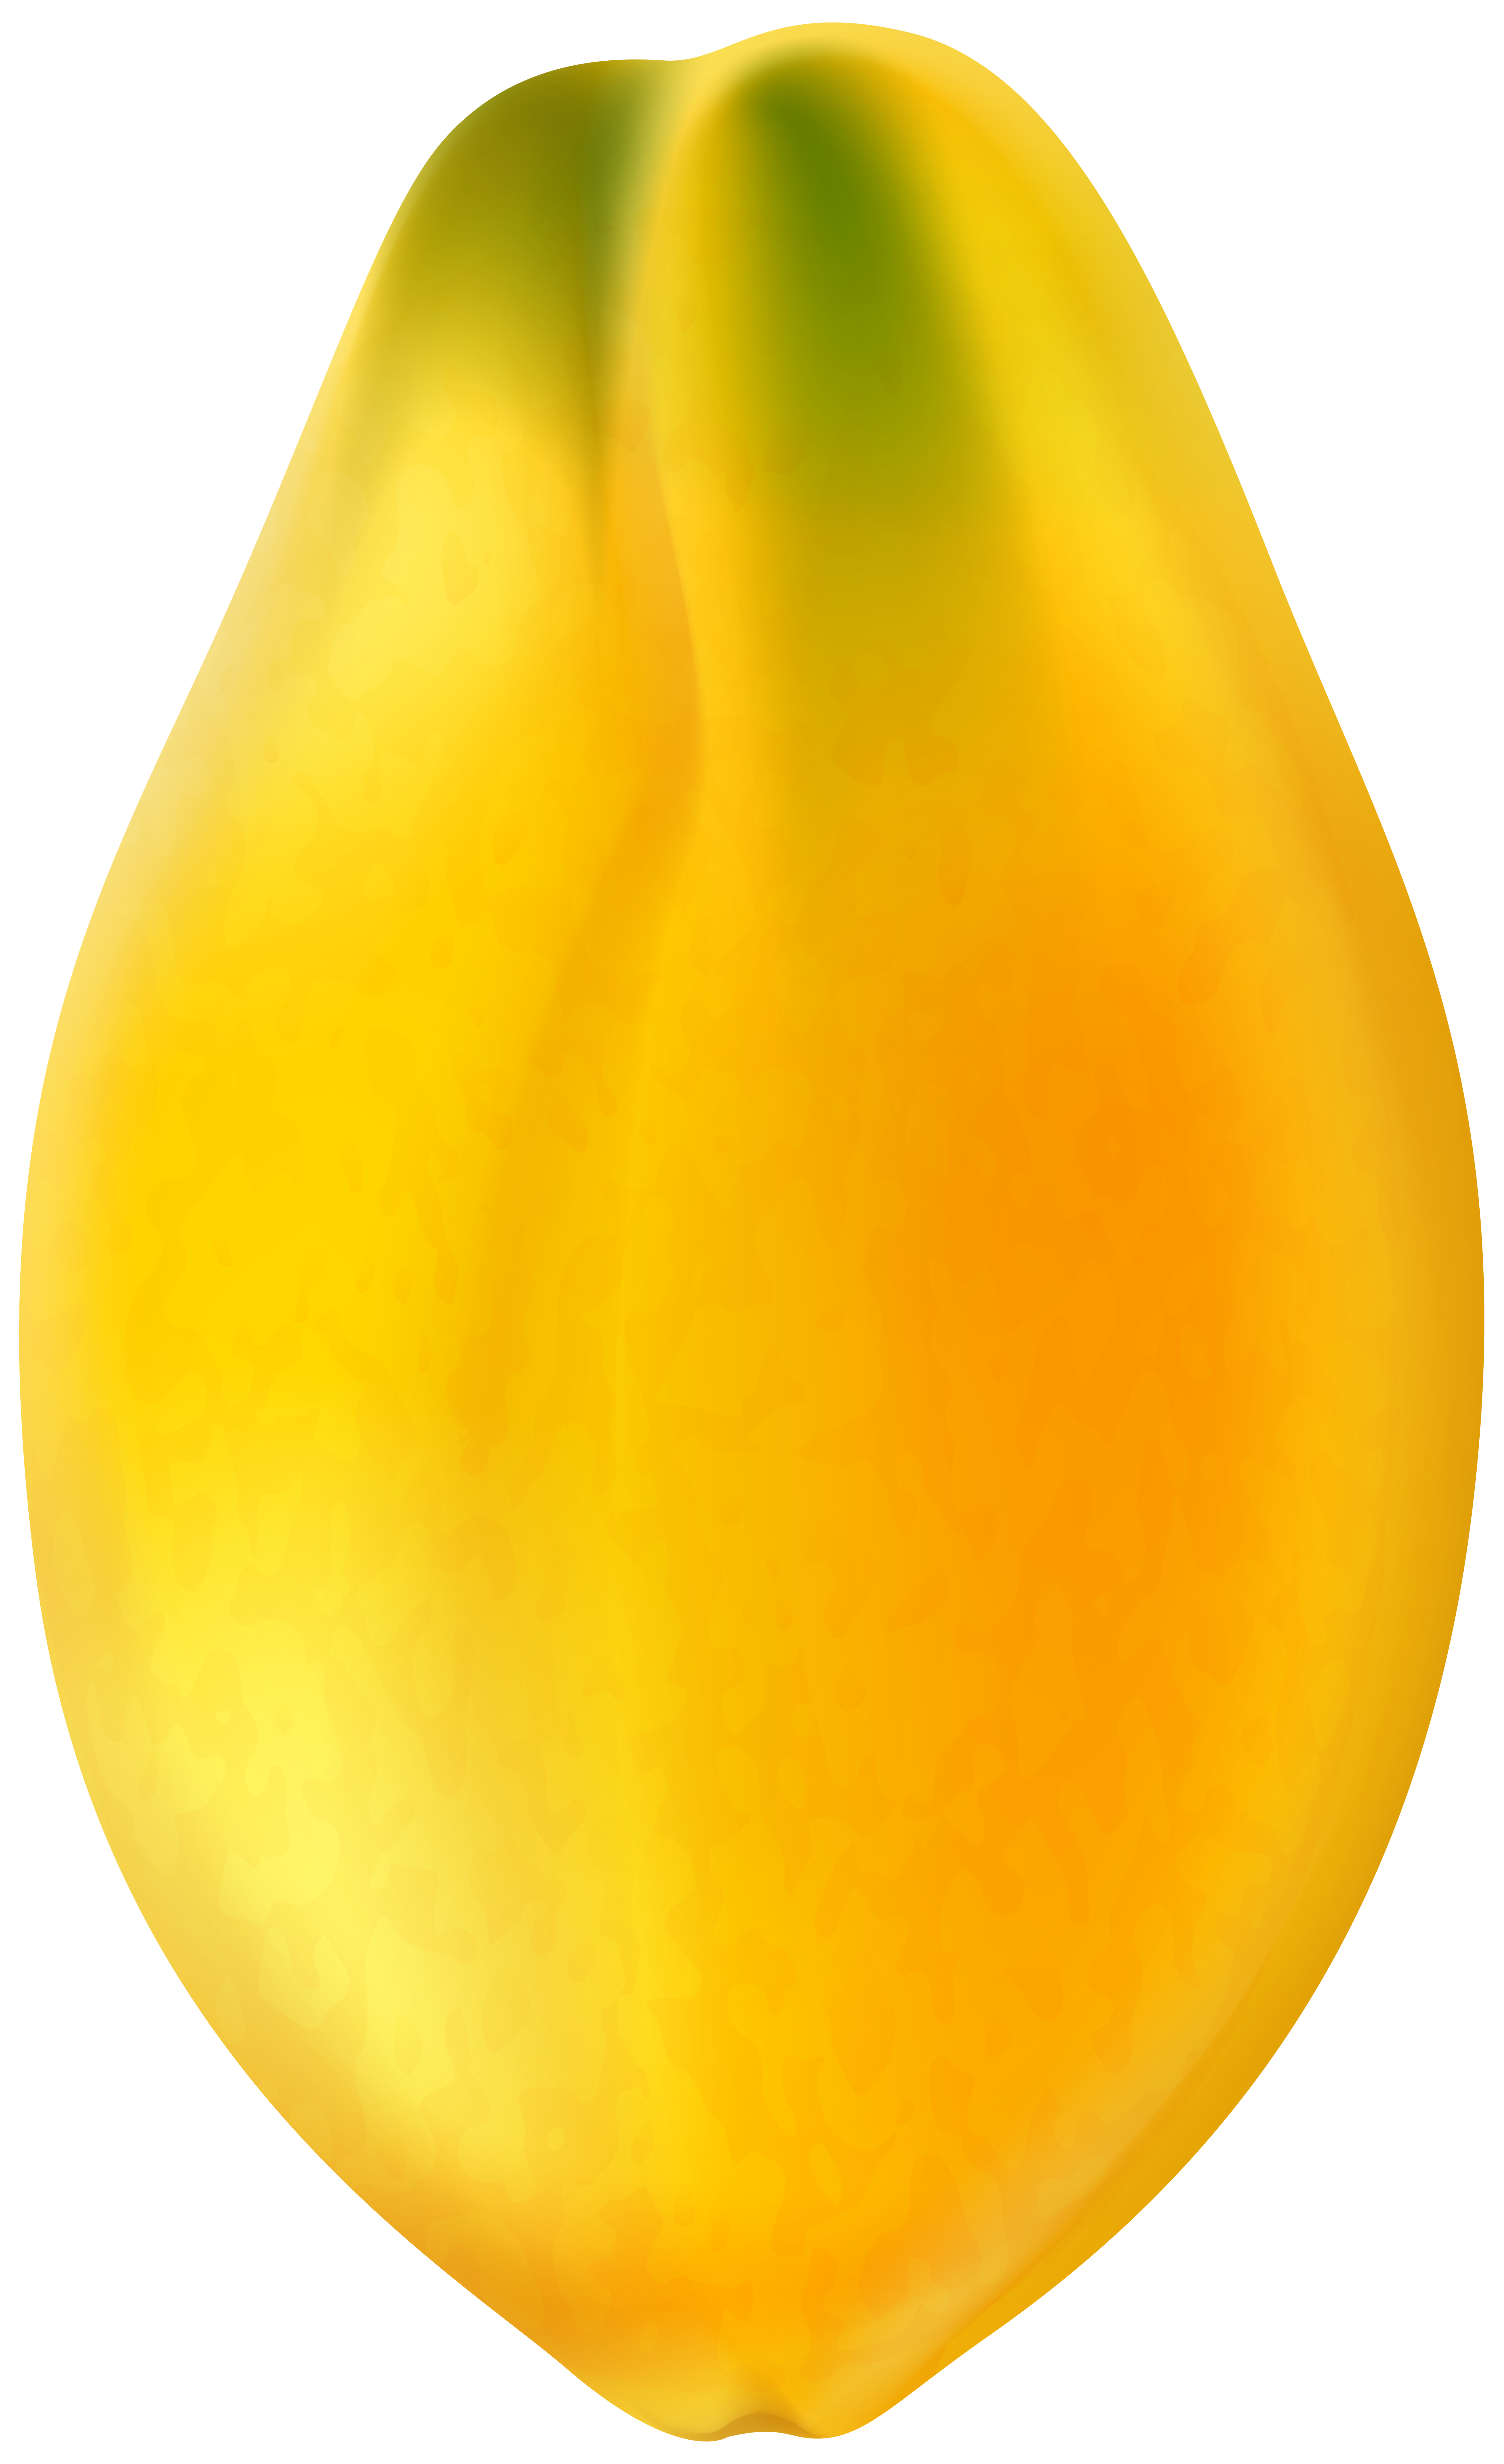 papaya clip art